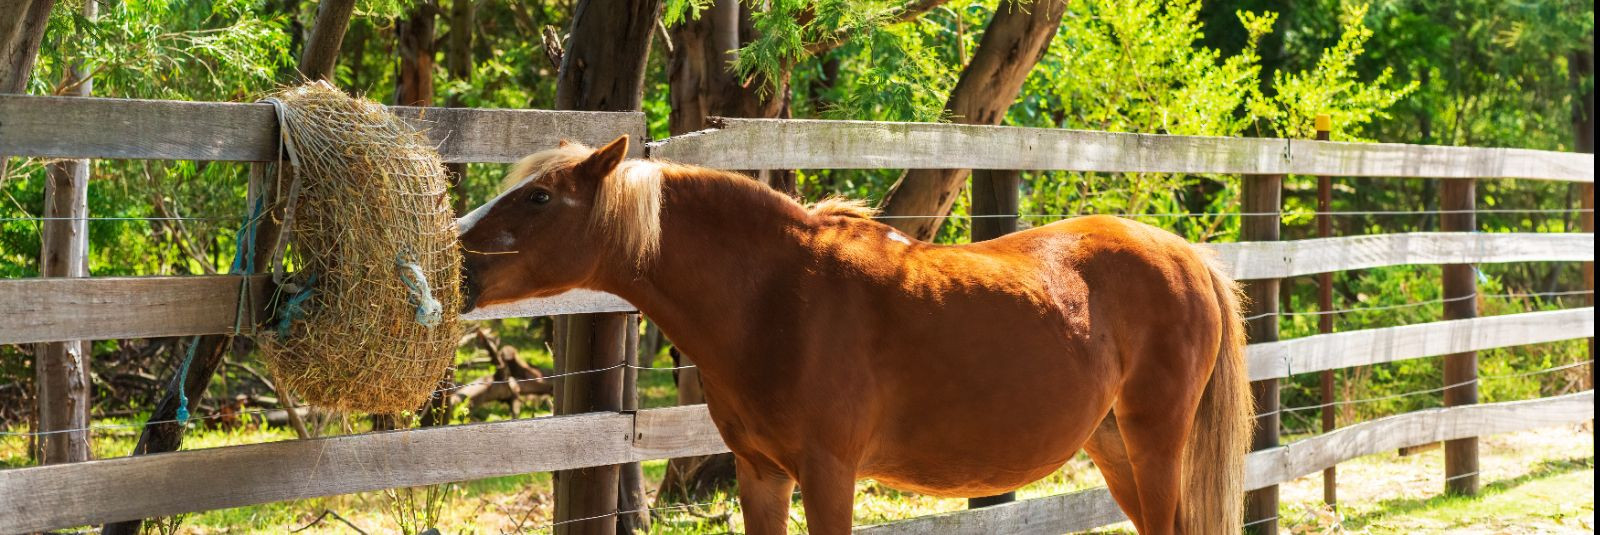 Hobuse tervis ja heaolu on igale hobuseomanikule äärmiselt olulised. ...